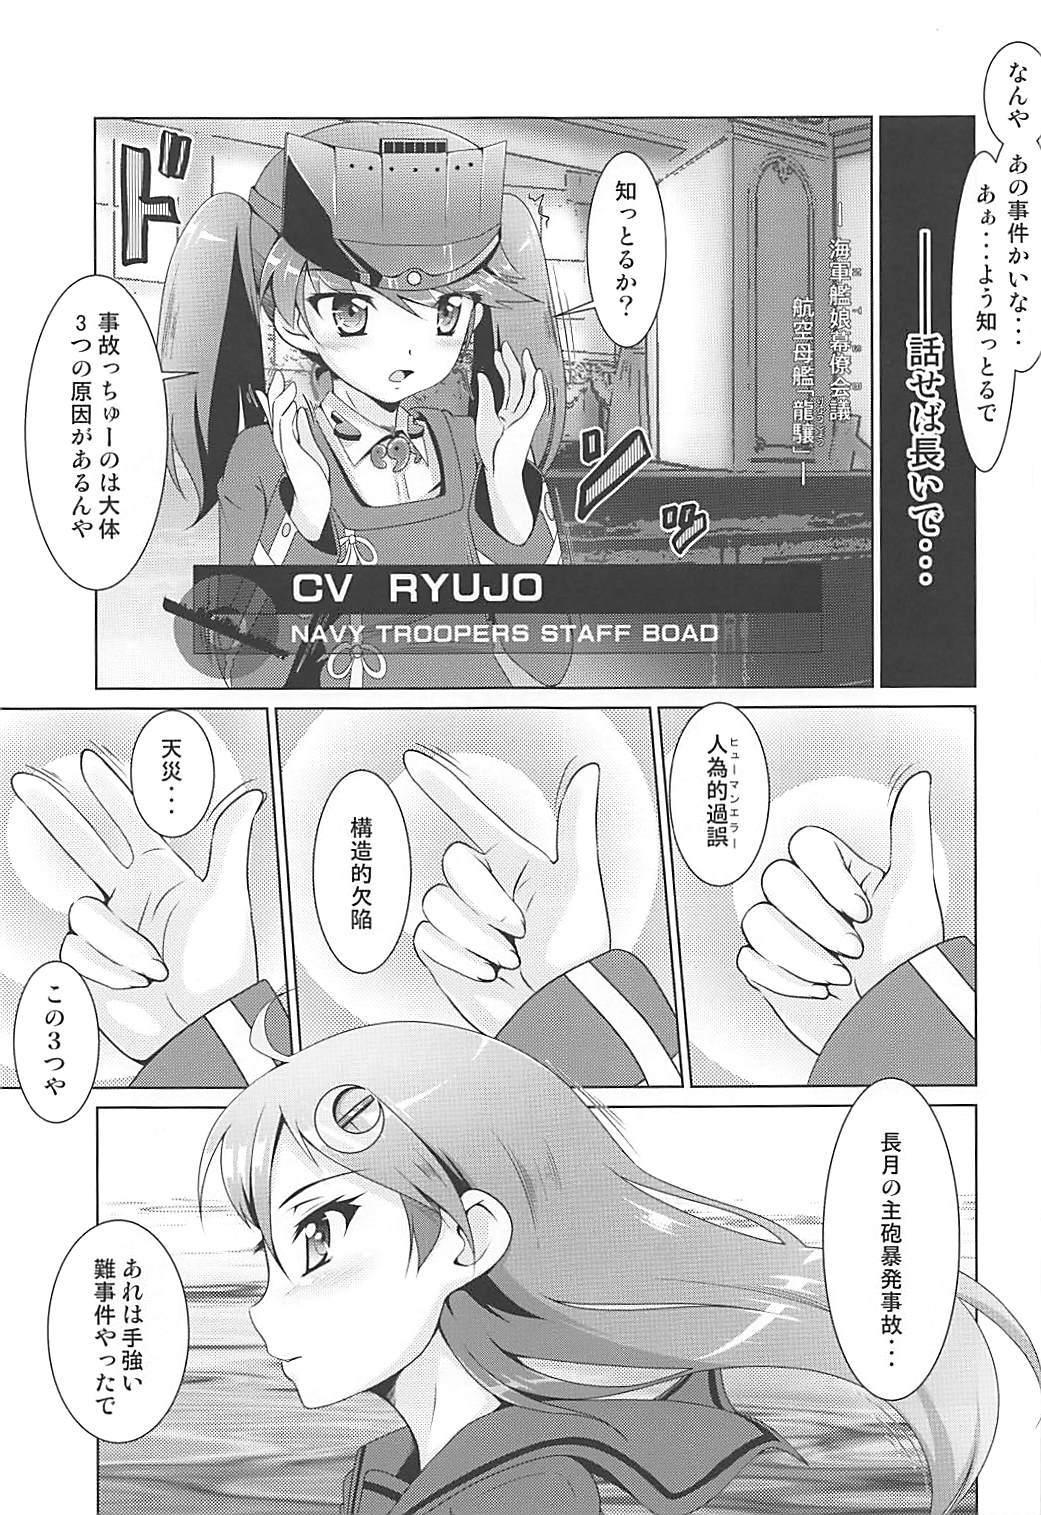 Her 2+2=Minazuki/Nagatsuki #03 - Kantai collection Gay Straight - Page 4